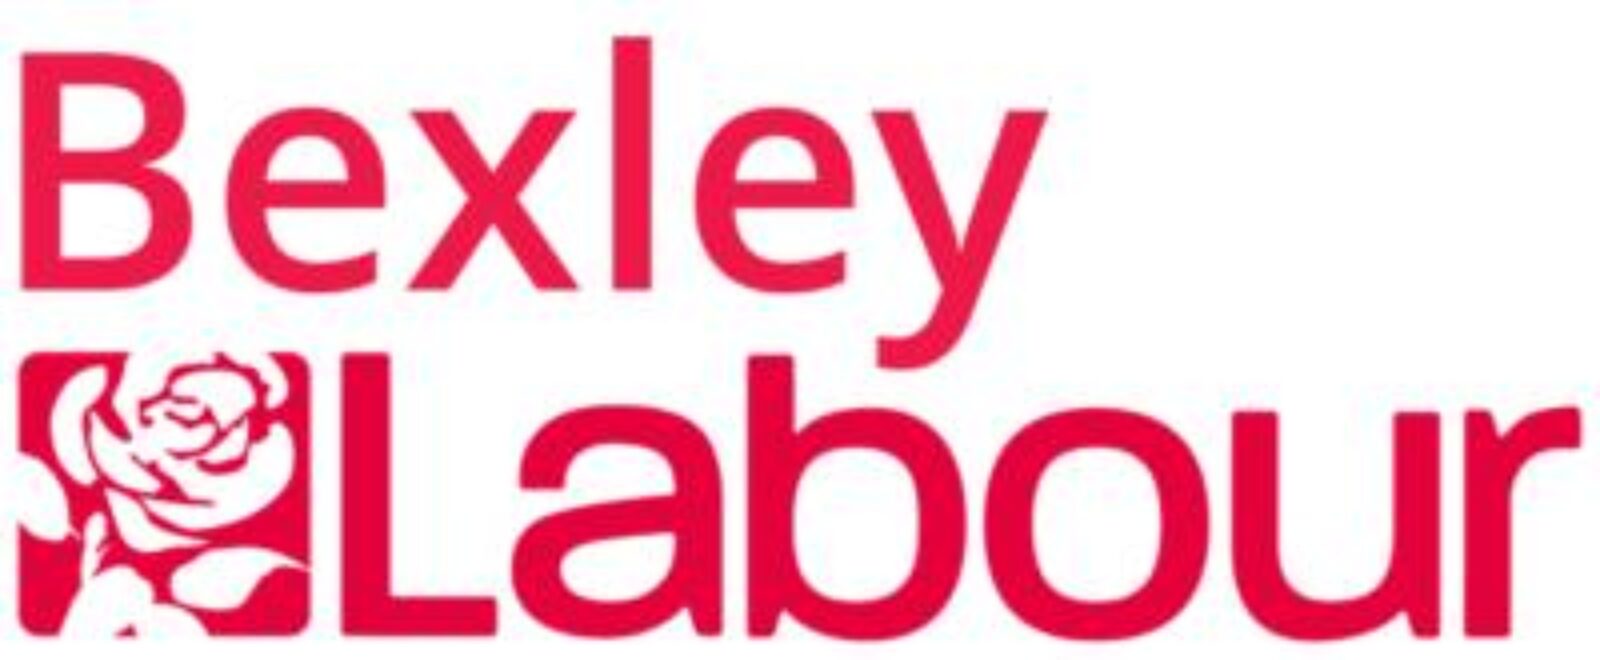 Bexley Labour